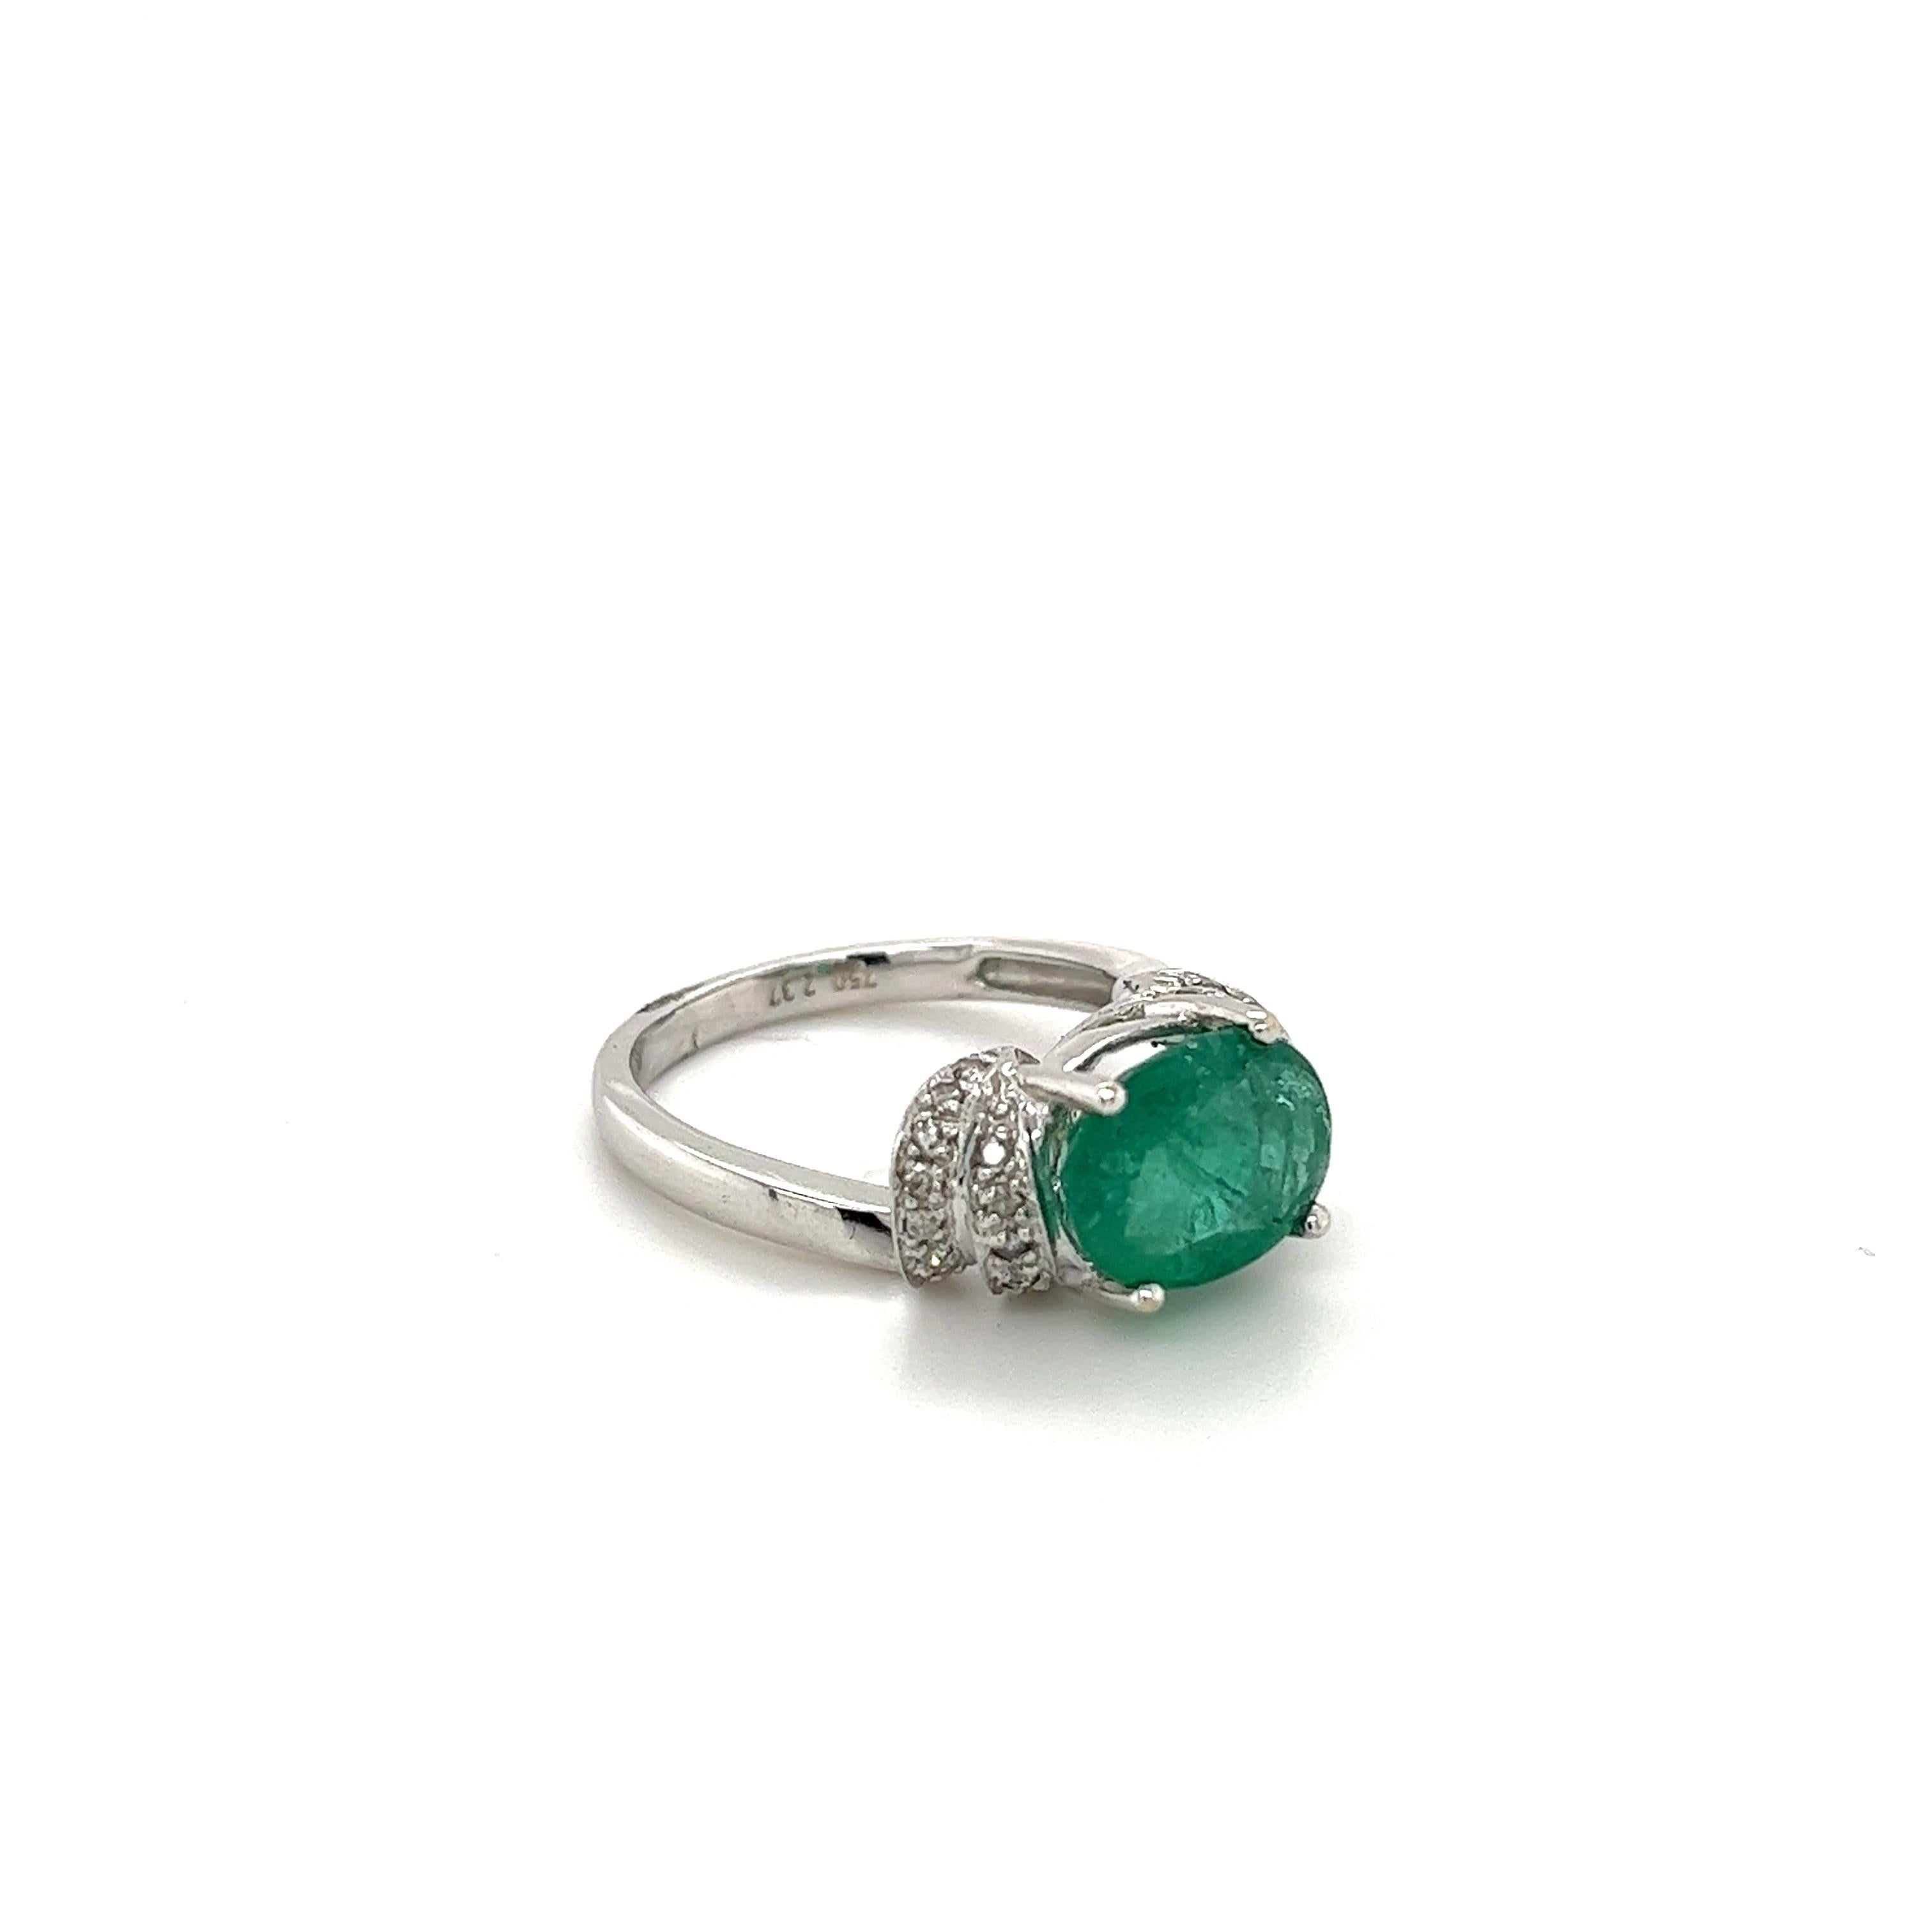 Lebendiger Ring mit kolumbianischem Smaragd, montiert in massivem 14-karätigem Weißgold. Oval geschliffener natürlicher Smaragd in Zackenfassung und mit 0,24 Karat farblosen natürlichen Diamanten. Dieser Smaragd hat einen tiefen hellgrünen Farbton,